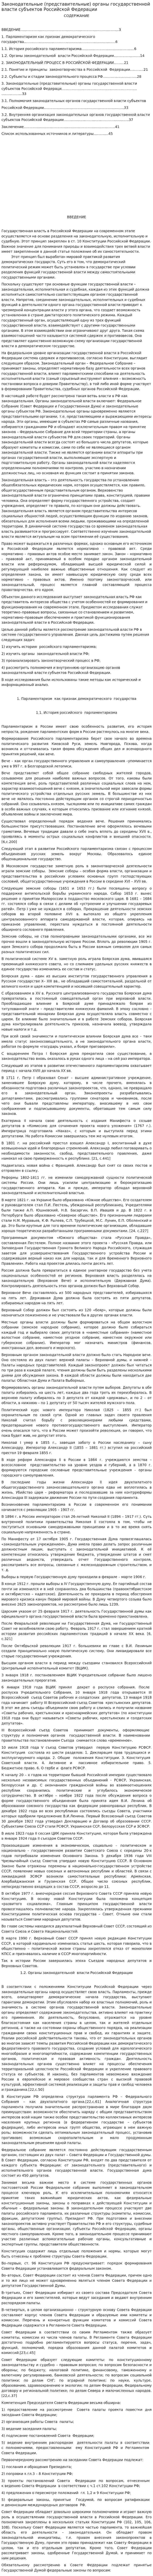 Законодательные (представительные) органы государственной власти субъектов Российской Федерации. 2